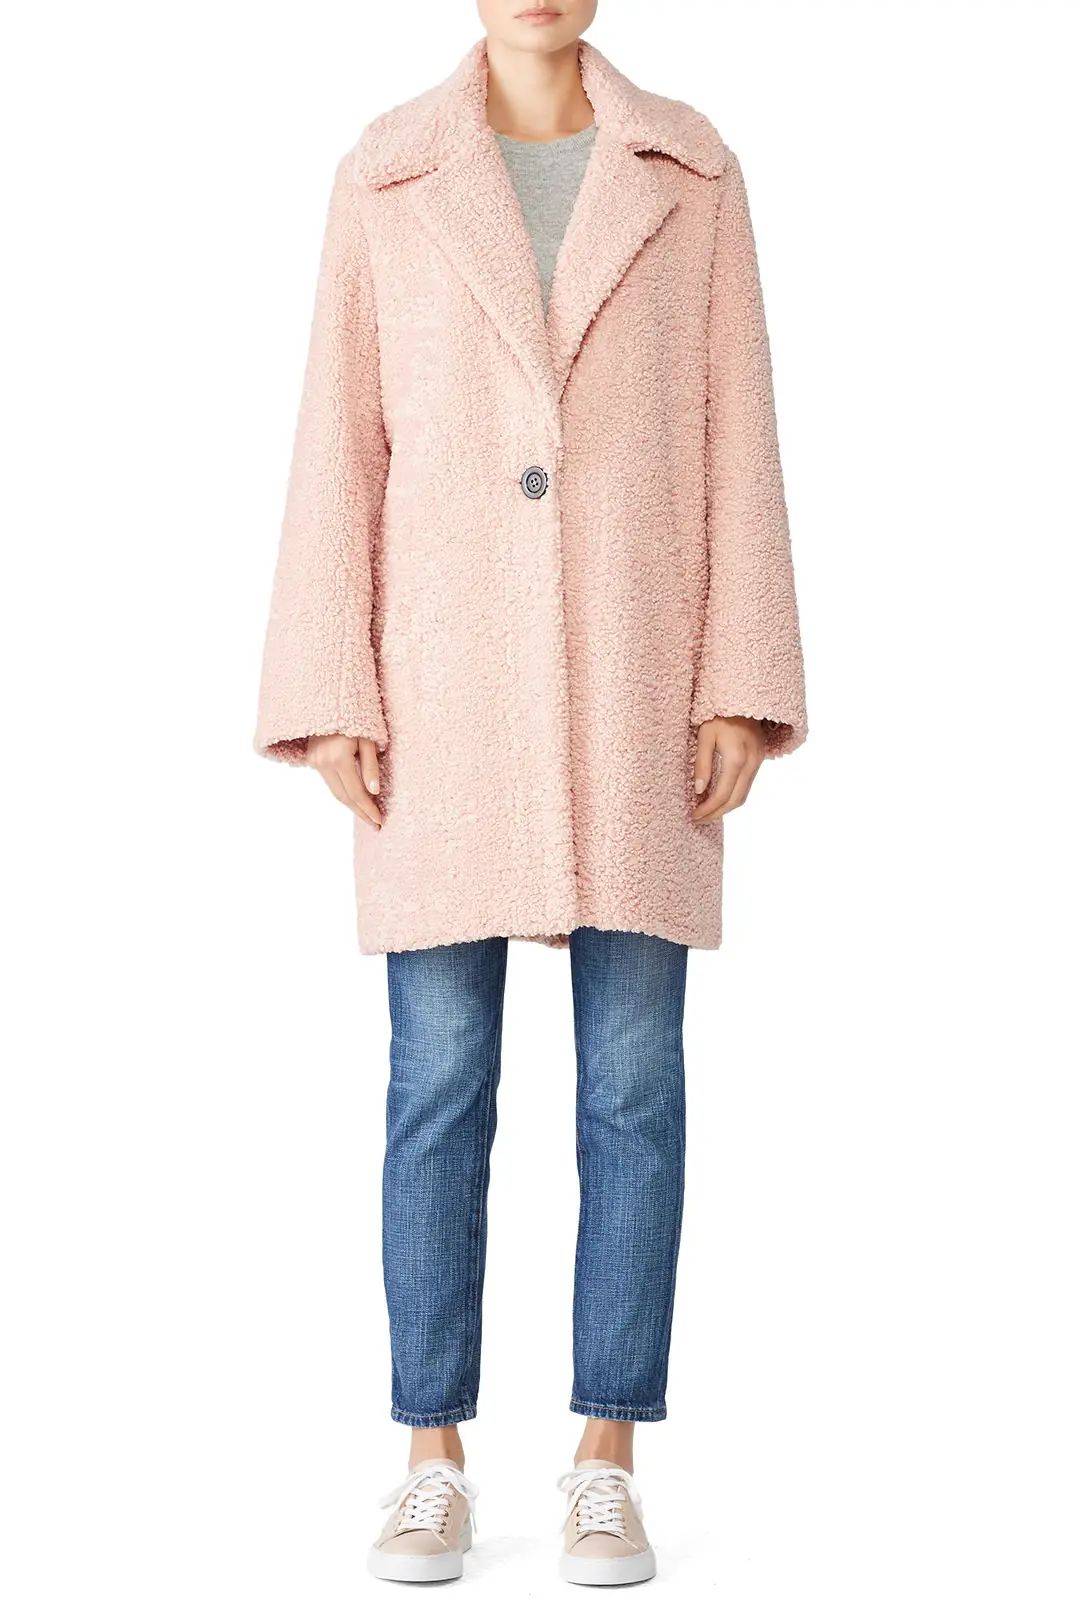 Waverly Grey Pink Ren Coat | Rent The Runway